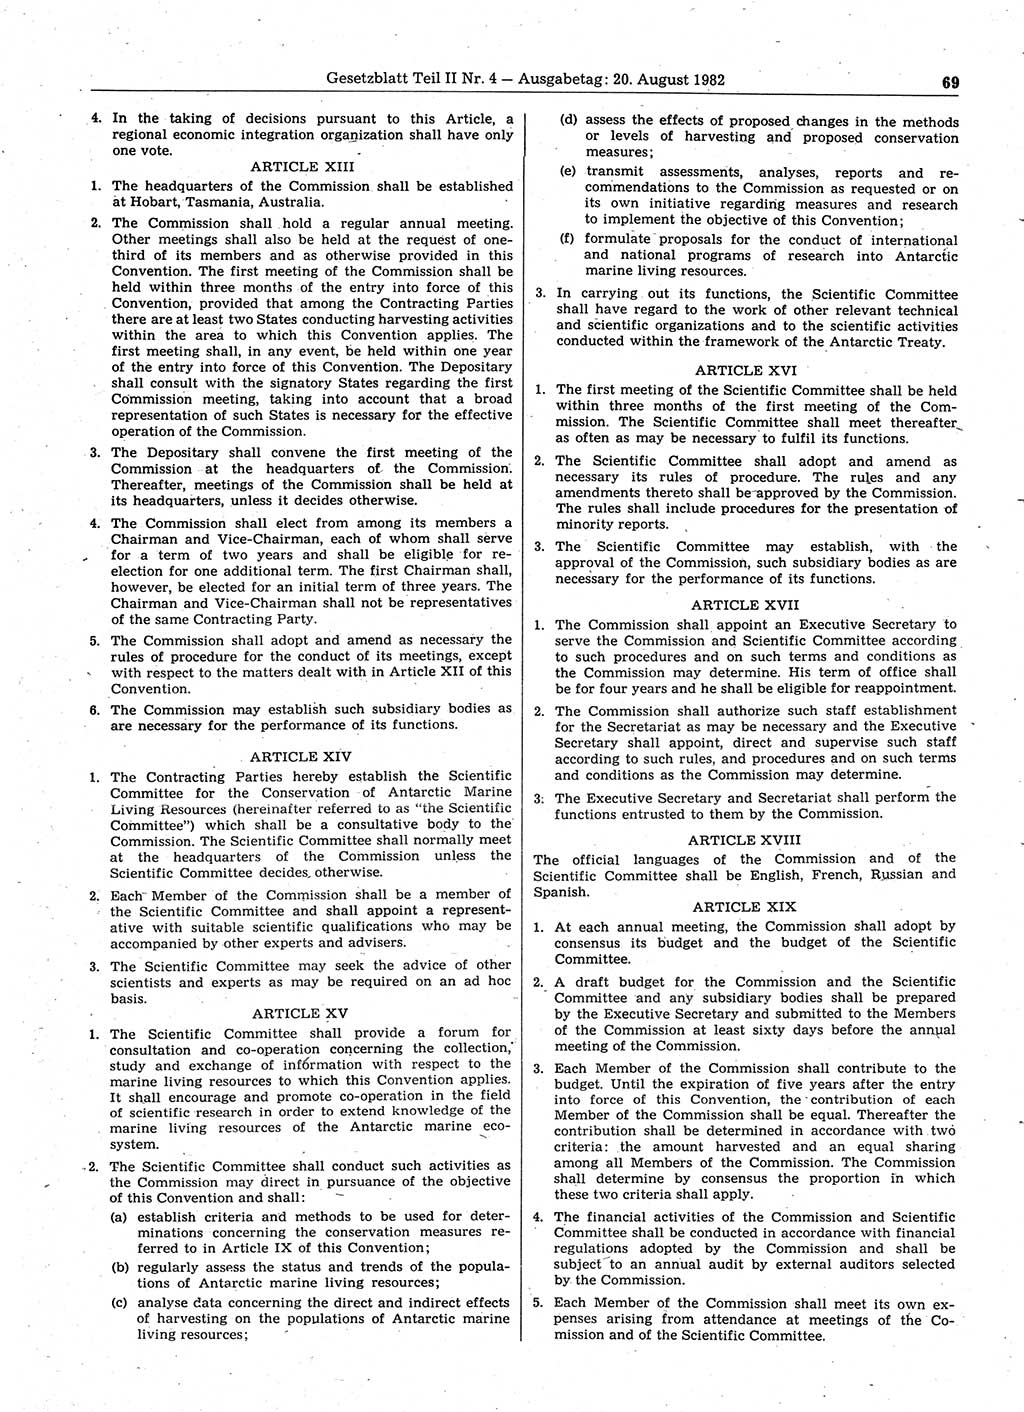 Gesetzblatt (GBl.) der Deutschen Demokratischen Republik (DDR) Teil ⅠⅠ 1982, Seite 69 (GBl. DDR ⅠⅠ 1982, S. 69)